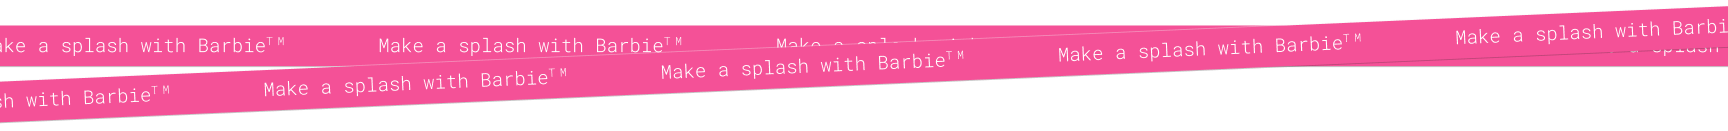 Kipling x Barbie